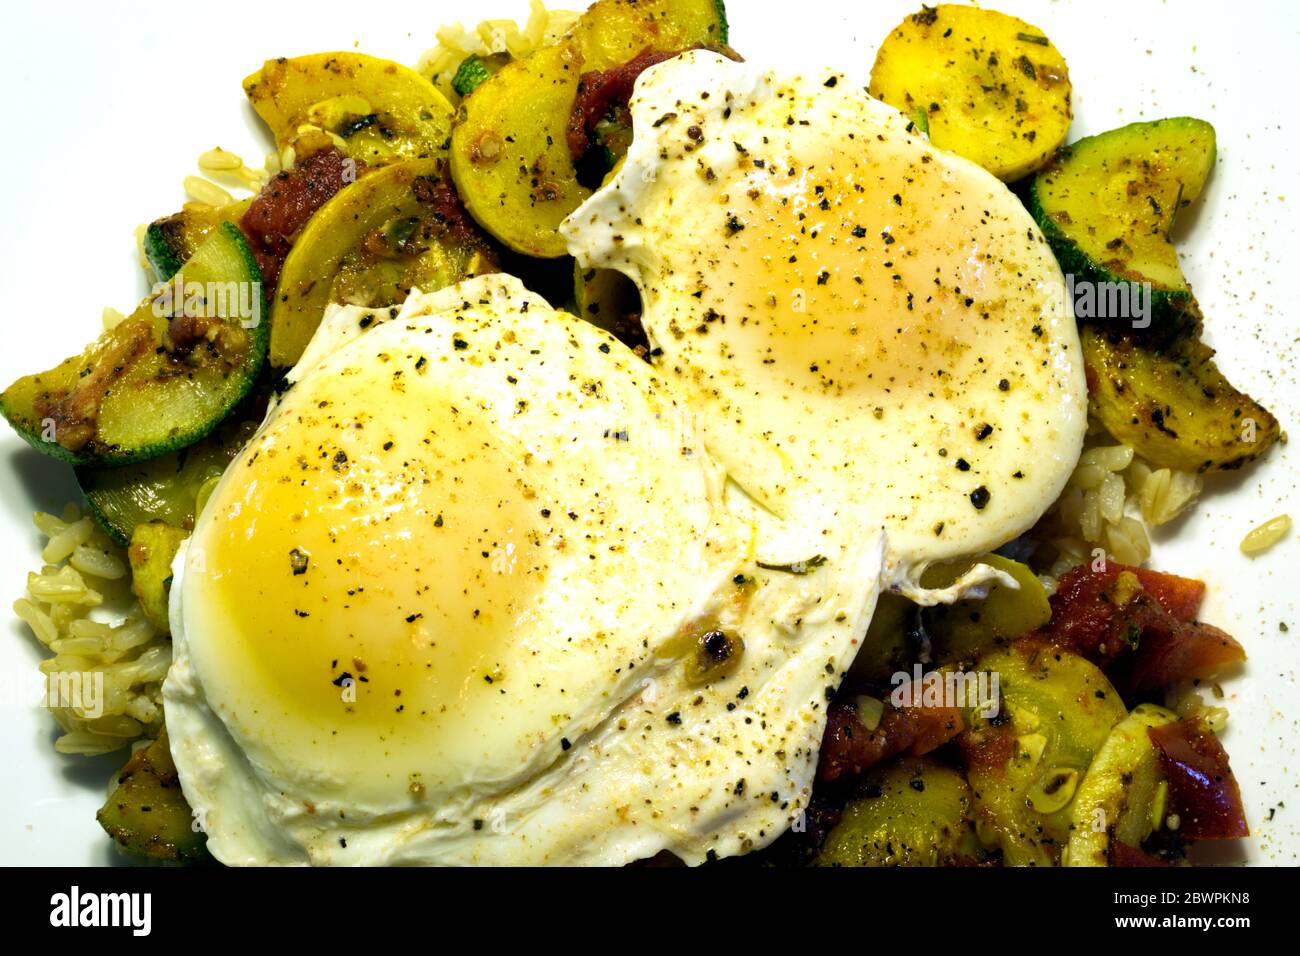 Zwei pochierte Eier liegen auf einem Bett aus gebratenen Zucchini, Sommer-Kürbis, Tomaten und braunem Reis. Stockfoto